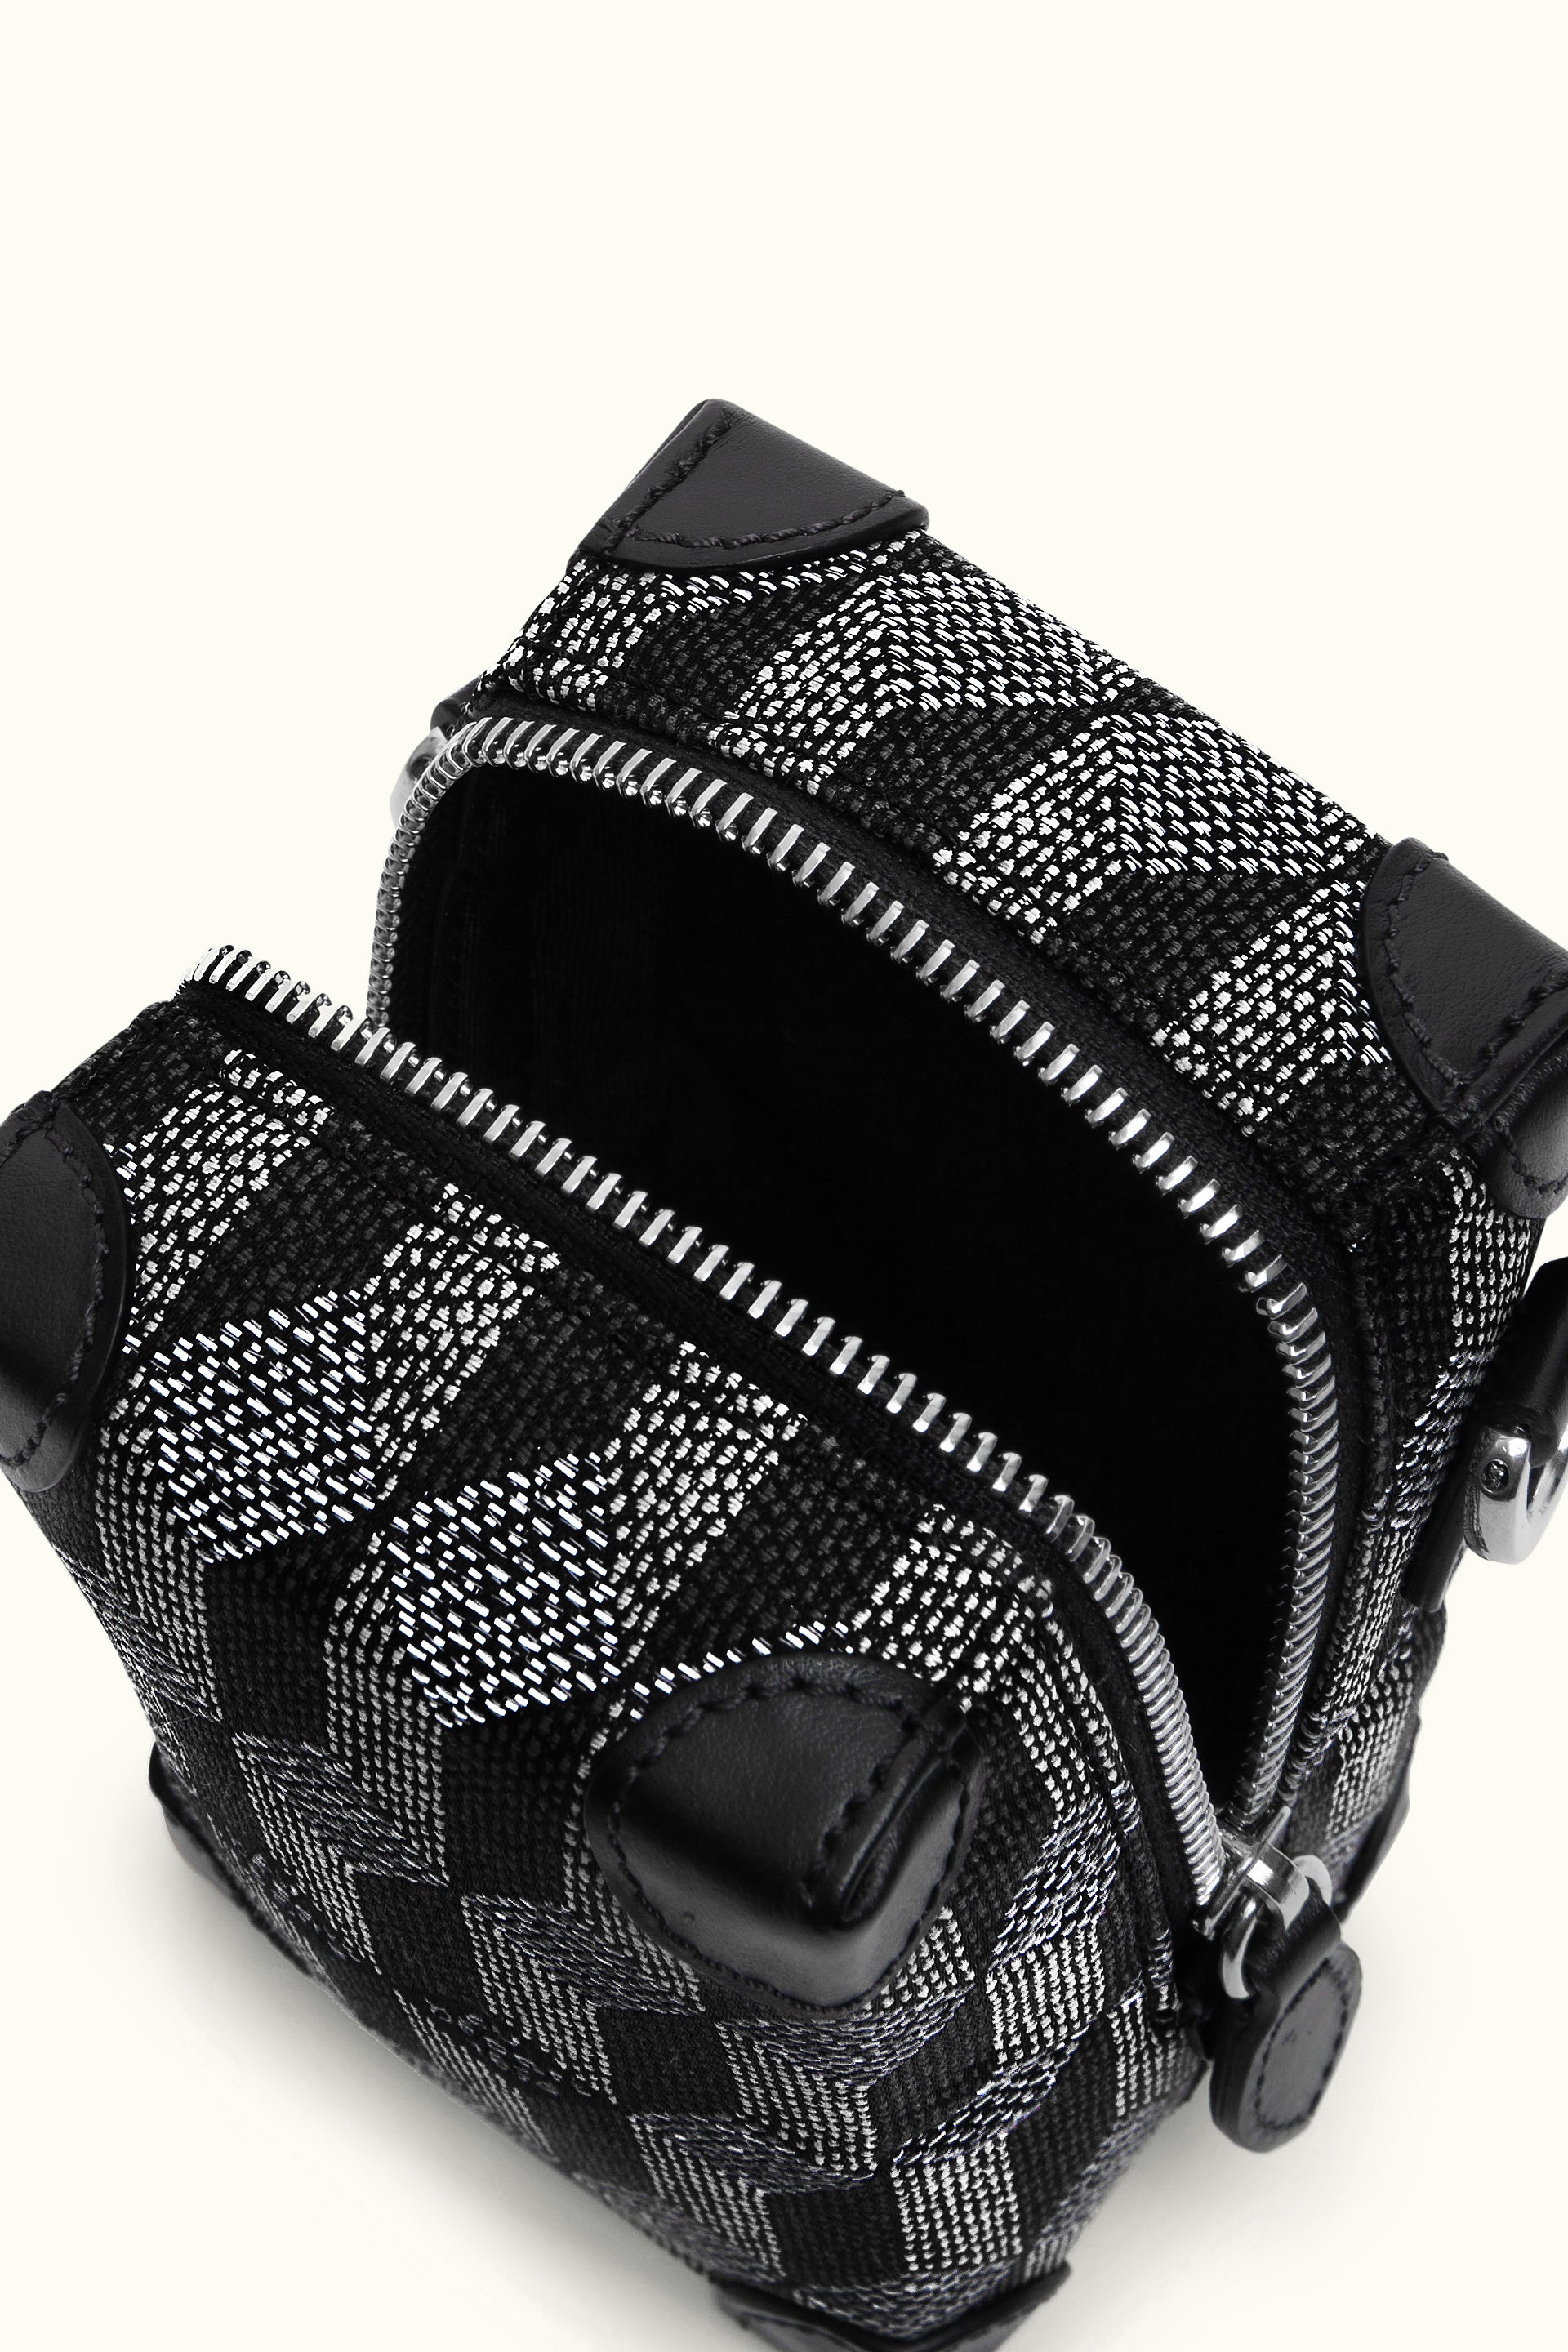 Louis Vuitton Black Monogram Trunk Case Airpods Pro 1 2 3 - Louis